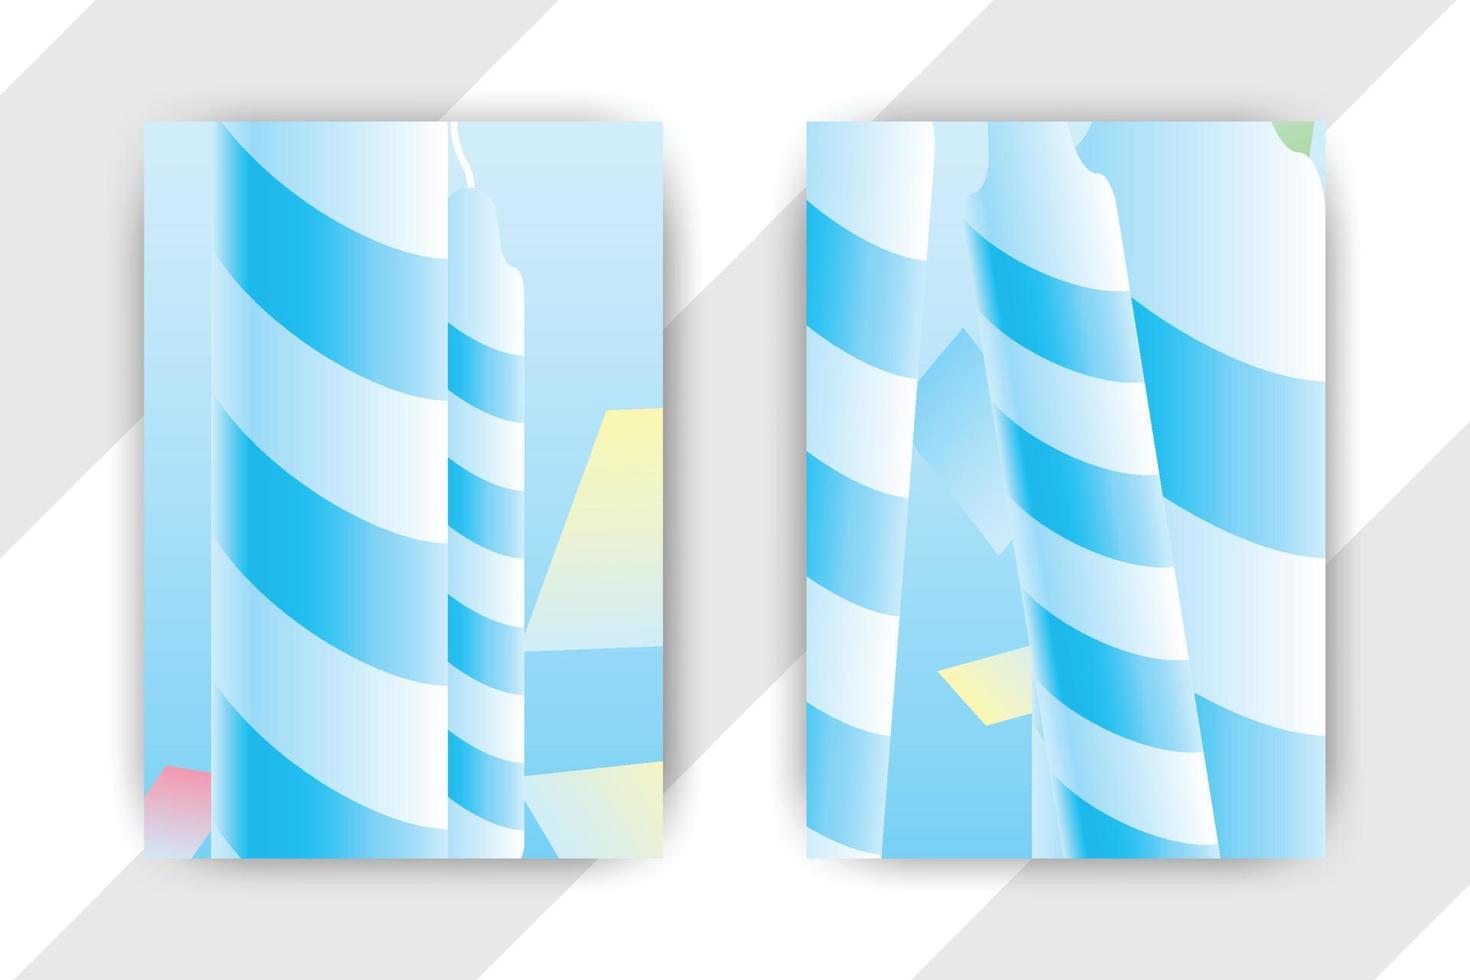 Flyer-Broschüren-Design-Vorlagenabdeckung. Business-Cover-Größe A4-Vorlage vektor